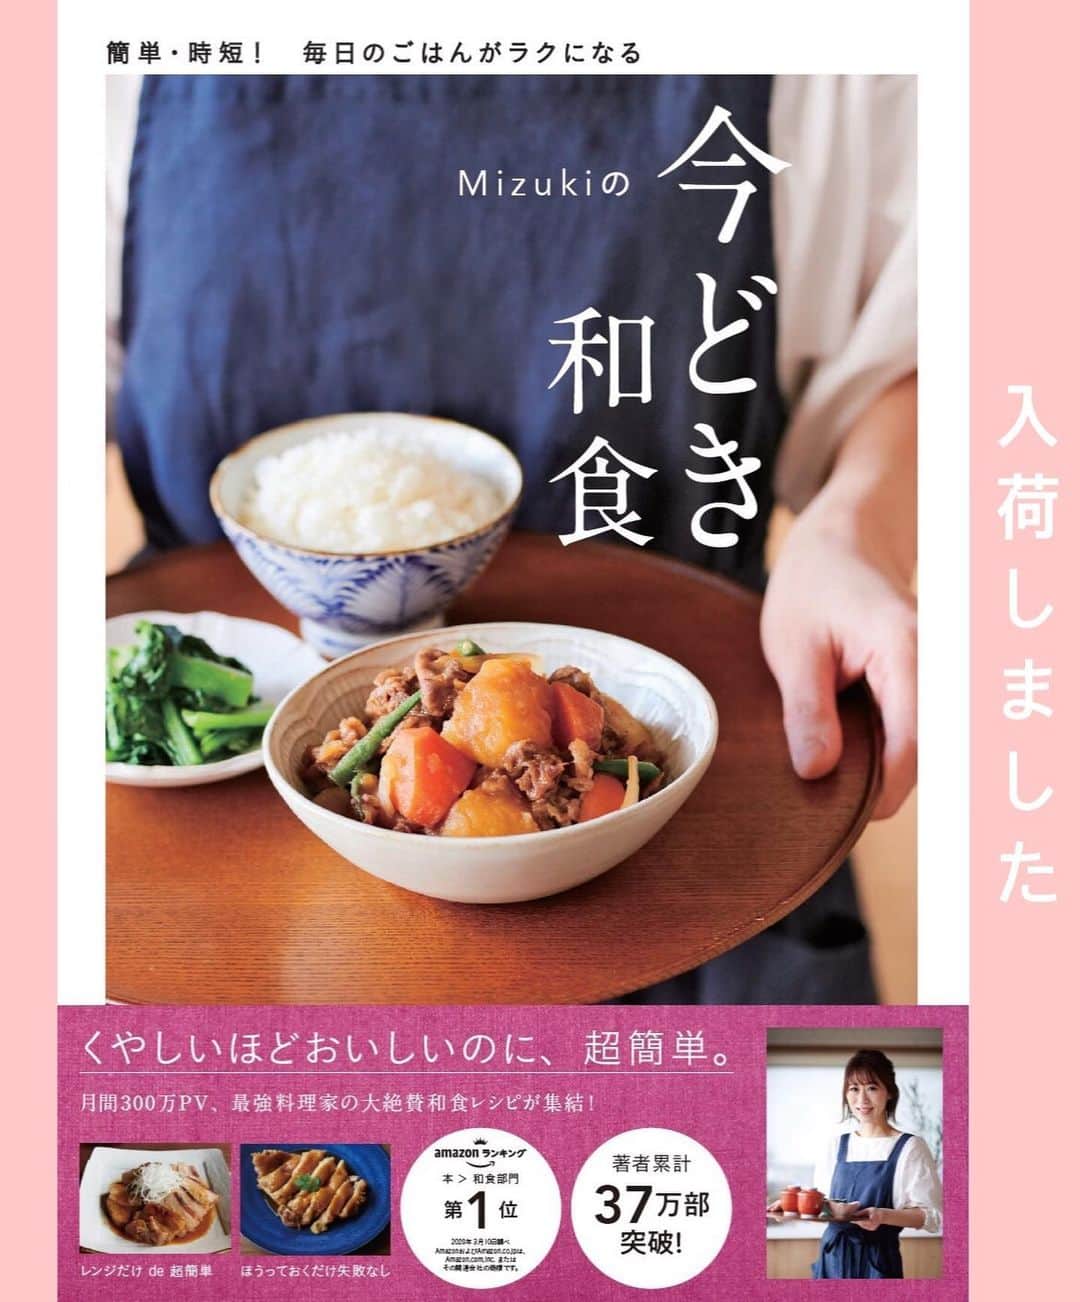 Mizuki【料理ブロガー・簡単レシピ】さんのインスタグラム写真 - (Mizuki【料理ブロガー・簡単レシピ】Instagram)「・﻿ 【レシピ】ーーーーーーーーーーーーーーーー﻿ ♡ポン酢de簡単♡鶏肉となすのさっぱり煮♡﻿ ーーーーーーーーーーーーーーーーーーーーー﻿ ﻿ ﻿ ﻿ おはようございます(*^^*)﻿ ﻿ 今日ご紹介させていただくのは﻿ 鶏肉となすのさっぱり煮♡﻿ 味付けはポン酢で失敗なし♩﻿ さっと炒めて煮るだけの﻿ 超簡単レシピです(*´艸`)﻿ ﻿ 鶏肉はとろんと柔らかく﻿ なすはジューシーに仕上がりますよ♡﻿ フライパンひとつでできるので﻿ よかったらお試し下さいね(*^^*)﻿ ﻿ ﻿ ﻿ ーーーーーーーーーーーーーーーーーーーー﻿ 【2人分】﻿ 鶏もも肉...1枚(250g)﻿ なす...2本﻿ 塩こしょう...少々﻿ 片栗粉...適量﻿ ごま油...大1.5﻿ ●水・ポン酢...各50ml﻿ ●みりん...大2﻿ (あれば)万能ねぎ...適量﻿ ﻿ 1.なすは一口大の乱切りにし、水に3分晒して水気を切る。鶏肉は3cm大に切り、塩こしょうを振って片栗粉をまぶす。﻿ 2.フライパンにごま油を入れて中火で熱し、1を炒める。鶏肉の色が変わったら●を加え、たまに混ぜながら5〜6分煮る。﻿ 3.器に盛り、小口切りにしたねぎをトッピングする。﻿ ーーーーーーーーーーーーーーーーーーーー﻿ ﻿ ﻿ ﻿ 《ポイント》﻿ ♦︎鶏むね肉でも作れます♩全体をフォークで刺し、1cm厚さの削ぎ切りにして下さい♩﻿ ﻿ ﻿ ﻿ ﻿ ﻿ ﻿ ﻿ 🔻入荷しました🔻﻿ ストーリーにリンク貼っています🙇‍♀️﻿ ＿＿＿＿＿＿＿＿＿＿＿＿＿＿＿＿＿＿＿﻿ 📕\ \ 新刊発売中 / /📕﻿ 簡単・時短！ 毎日のごはんがラクになる﻿ ✨🦋 【 #Mizukiの今どき和食 】🦋✨﻿ ＿＿＿＿＿＿＿＿＿＿＿＿＿＿＿＿＿＿＿﻿ ﻿ なるべく少ない材料で﻿ 手間も時間も省きながら﻿ 簡単にできるおいしい和食レシピ♩﻿ 簡単に失敗なくマスターできる一冊で﻿ もっと気軽に、カジュアルに﻿ 和食を楽しんで下さいね(*^^*)﻿ ﻿ ﻿ ーーー ⭐️PART.1 メインおかず ⭐️ーーー﻿ 素材別にレシピをご紹介しています♩﻿ 和食の定番から新定番まで﻿ どれも押さえておきたいメニューばかり。﻿ 肉じゃがはフライパンで！焼き豚はレンジで！﻿ ぶり大根は切り身を使って手軽に作ります♩﻿ ﻿ ーーー ☘️PART.2 サブおかず ☘️ーーー﻿ 年中手に入るお手頃野菜と﻿ 乾物や大豆、こんにゃくなどを使った﻿ 副菜レシピをたっぷり掲載！！﻿ 普段SNSではメインおかずばかりなので﻿ 本では副菜にも力を入れています(*^^*)﻿ ﻿ ーーー 🌸PART.3 ごはんと汁物 🌸ーーー﻿ ささっと作れる丼と麺、﻿ みんなで食べたいいなり寿司や﻿ 手巻きごはんもご紹介！﻿ 複数の炊き込みごはんと﻿ 味噌汁&和風スープも盛りだくさん！﻿ ﻿ ﻿ 各レシピのポイントは﻿ 【写真付きで丁寧に解説】﻿ 副菜レシピもたっぷりなので﻿ 【メインページに副菜メモもつけました】﻿ ＊このメインにはこの副菜が合いますよ〜﻿ という献立の提案です(*^^*)﻿ 【その他コラムも充実】﻿ 全127品中ほぼ全て﻿ 【本だけのレシピです！】﻿ ＿＿＿＿＿＿＿＿＿＿＿＿＿＿＿＿＿＿＿﻿ ﻿ ﻿ ﻿ ﻿ ﻿ ＿＿＿＿＿＿＿＿＿＿＿＿＿＿＿＿＿﻿ 🎀発売中🎀﻿ 【#ホットケーキミックスのお菓子 】﻿ ﻿ 一冊まるっとホケミスイーツ♩﻿ 普段のおやつから﻿ 特別な日にも使えるレシピを﻿ この一冊に詰め込みました(*^^*)﻿ ホットケーキミックスを使えば﻿ 簡単に本格的なお菓子が作れますよ♡﻿ ＿＿＿＿＿＿＿＿＿＿＿＿＿＿＿＿＿﻿ ﻿ ⭐️ストーリー、ハイライト、プロフ画面に﻿ 本のURLを貼らせていただいております♩﻿ →(@mizuki_31cafe )﻿ ﻿ ﻿ ﻿ ﻿ #さっぱり煮#ポン酢#ポン酢煮#鶏肉#なす#うちで過ごそう#おうち時間#Mizuki#簡単レシピ#時短レシピ#節約レシピ#料理#レシピ#フーディーテーブル#マカロニメイト#おうちごはん#デリスタグラマー#料理好きな人と繋がりたい#おうちごはん#うちるフォト#lover#foodpic#follow#cooking#recipe#lin_stagrammer#stayhome#鶏肉となすのさっぱり煮m」6月5日 6時58分 - mizuki_31cafe